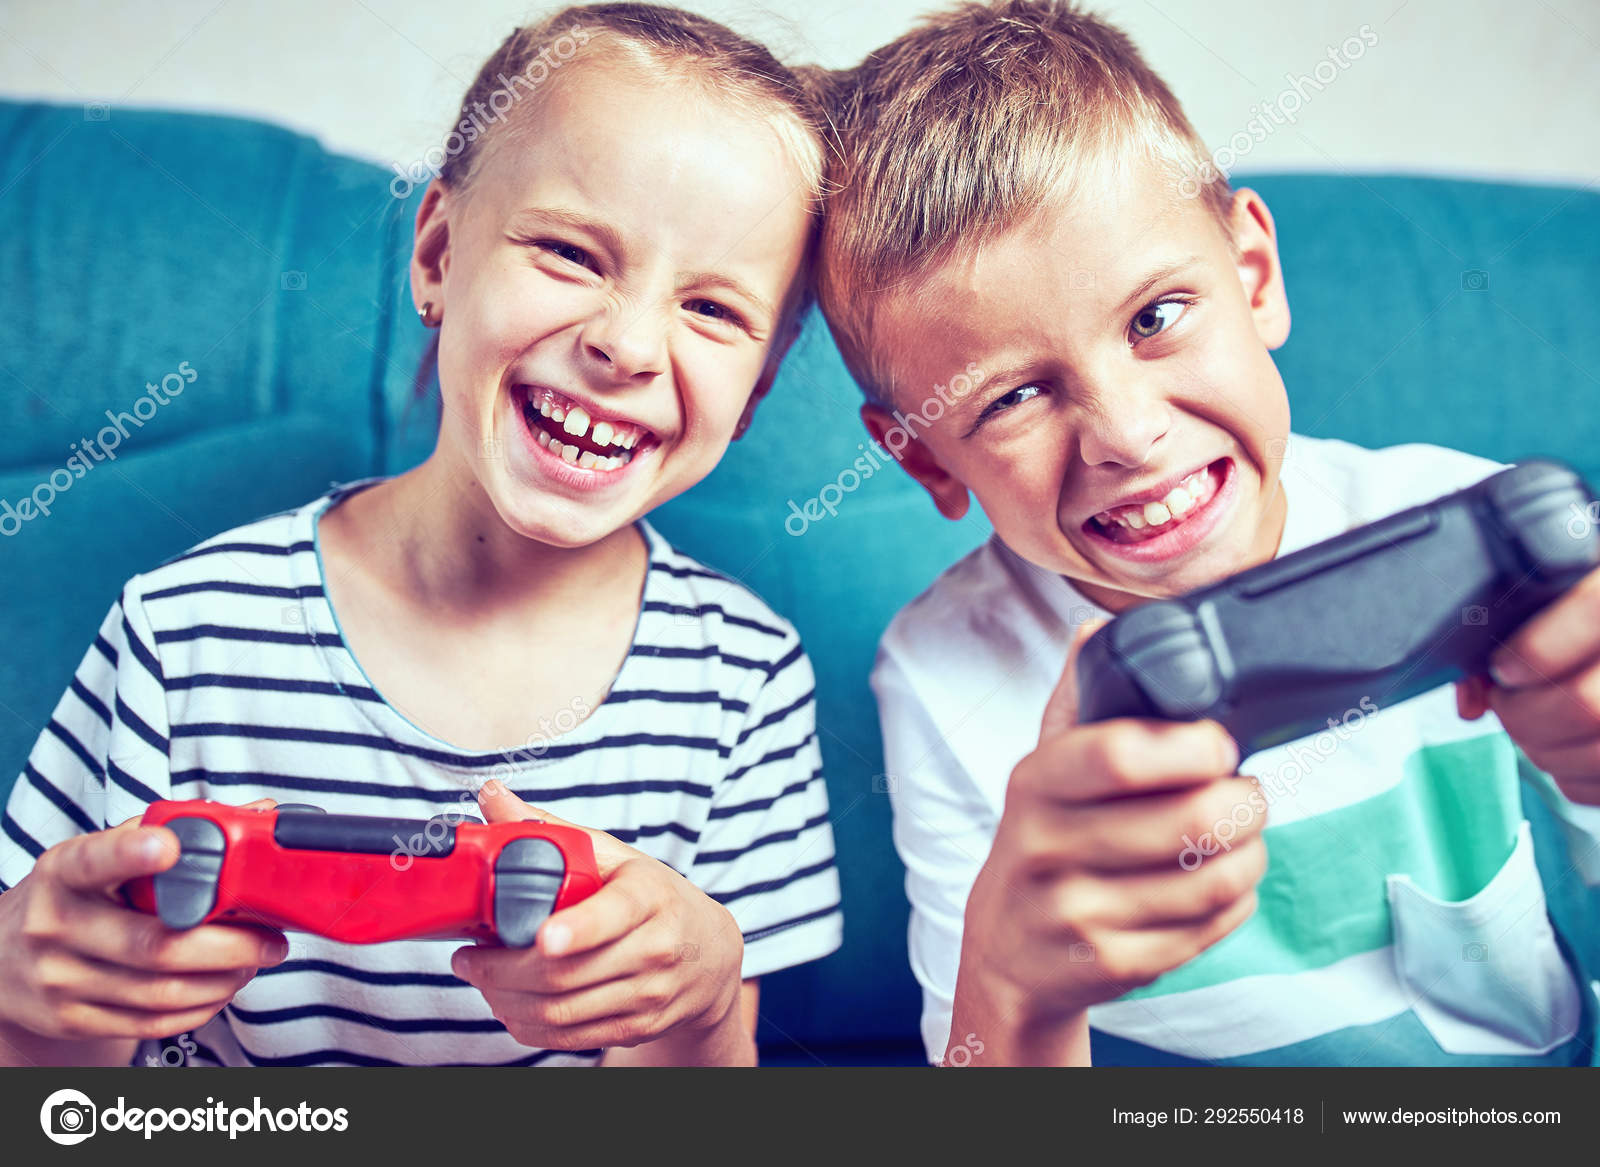 Imagenes Sobre Un Niño Jugando Con Los Videojuegos : 9 Juegos De Mesa Para Jugar Con Ninos La Tercera